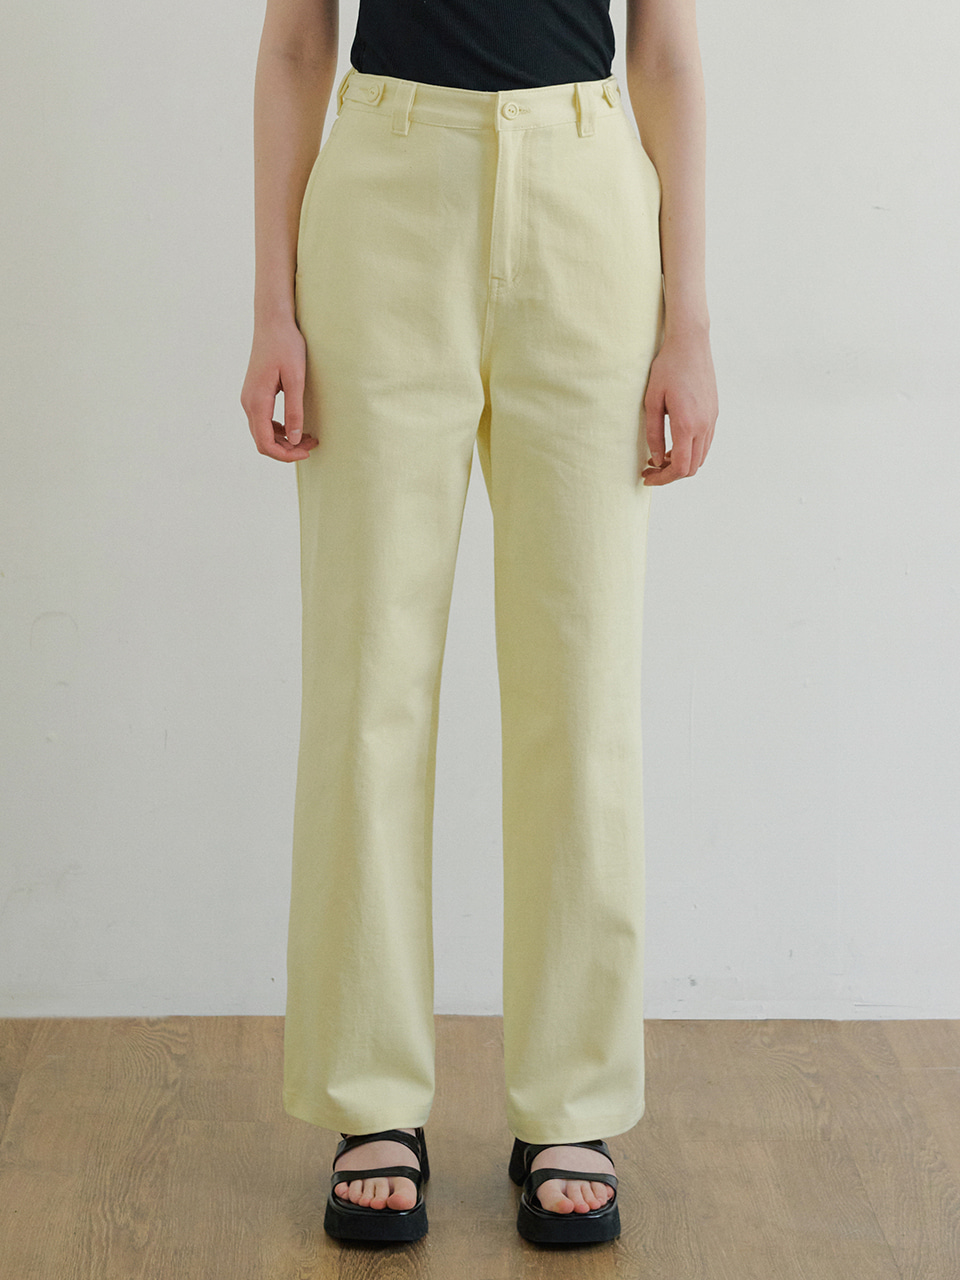 monts 1485 color cotton pants (lemon)